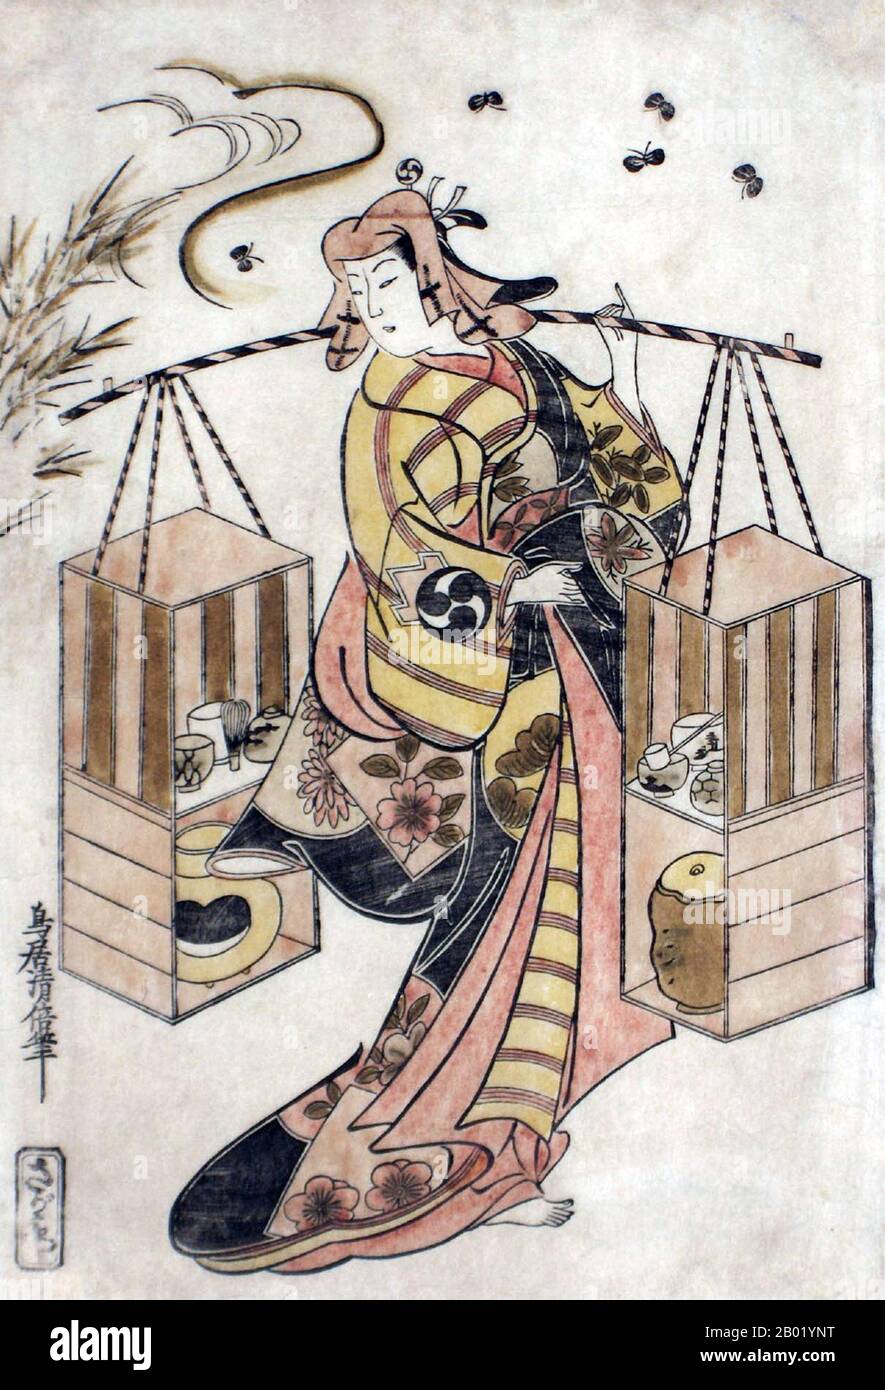 Torii Kiyomasu (鳥居 清倍, c. 1690s - 1720s) è stato un pittore e incisore giapponese della scuola di Torii, nel genere di ukiyo-e.. Come gli altri artisti Torii, il suo obiettivo principale era quello di cartelloni Kabuki, annunci pubblicitari, stampe di attori e altro materiale correlato. Foto Stock